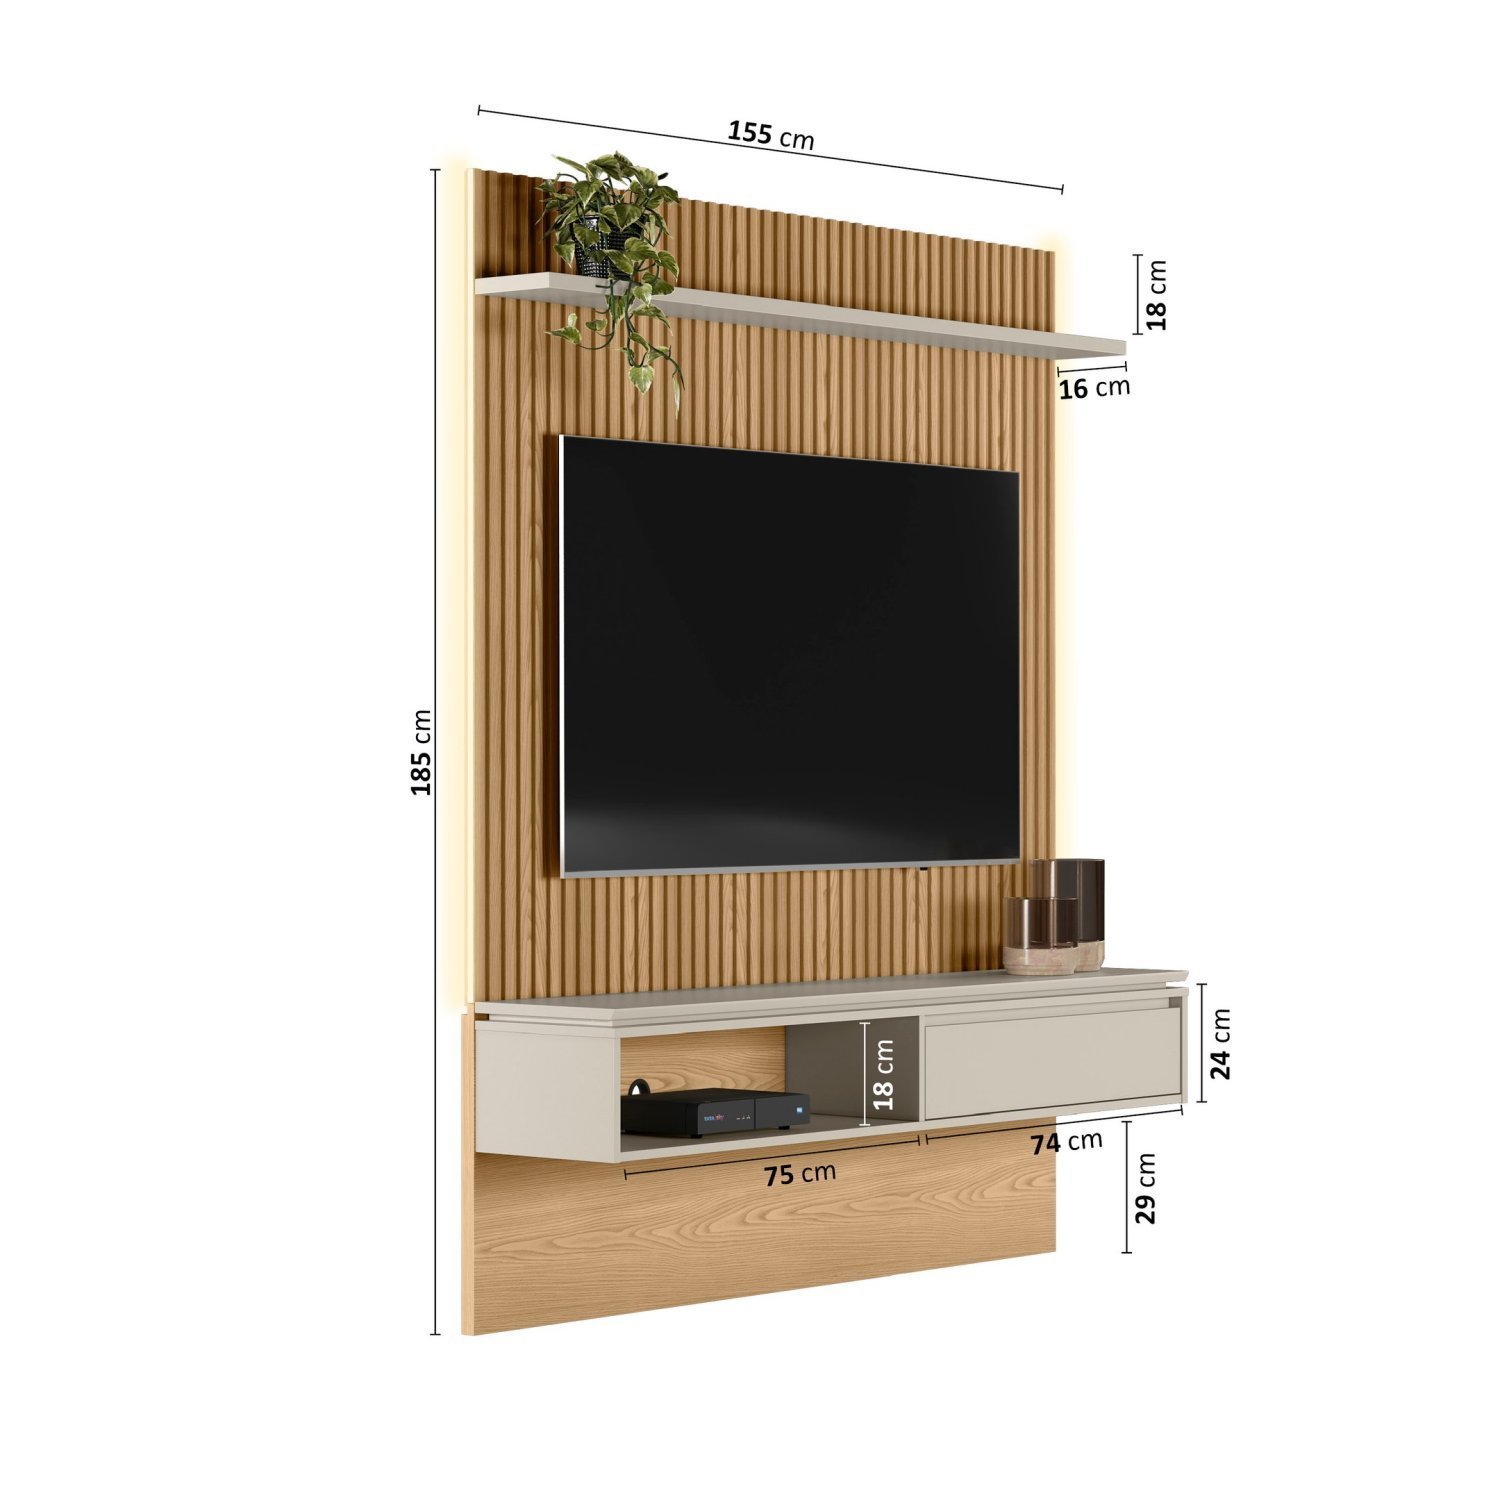 Painel Home Samambaia Para TV até 65 Polegadas com Kit LED CabeCasa MadeiraMadeira - 5